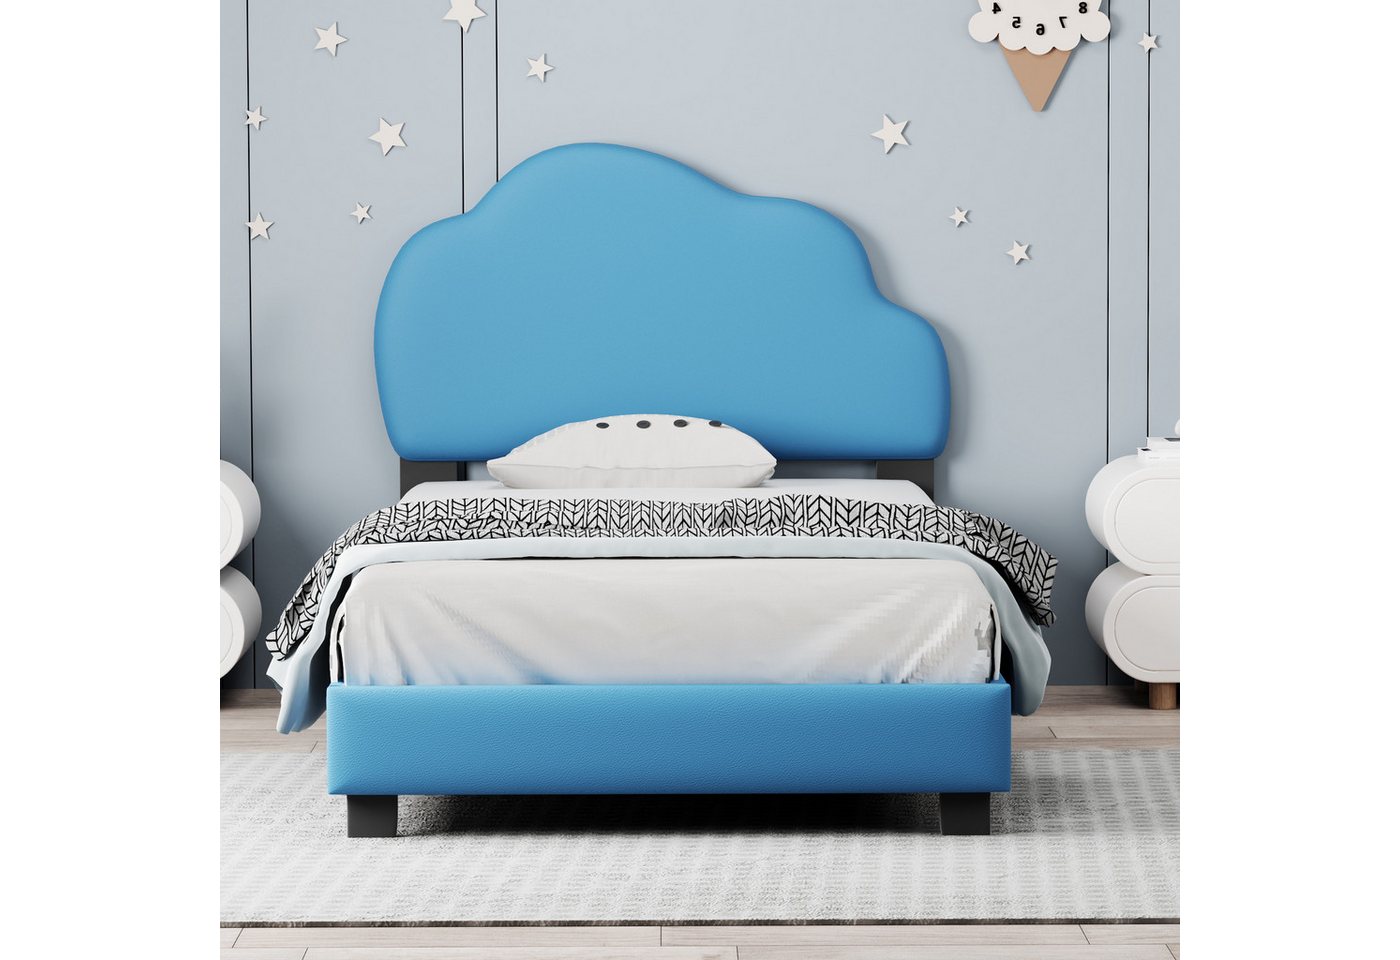 IDEASY Einzelbett Kinderbett 90*200cm Einzelbett Wolkenförmiges Kopfteil Beige/Blau, , MDF+Kunstleder+Metall Polsterbett, Prinzessinnenbett von IDEASY